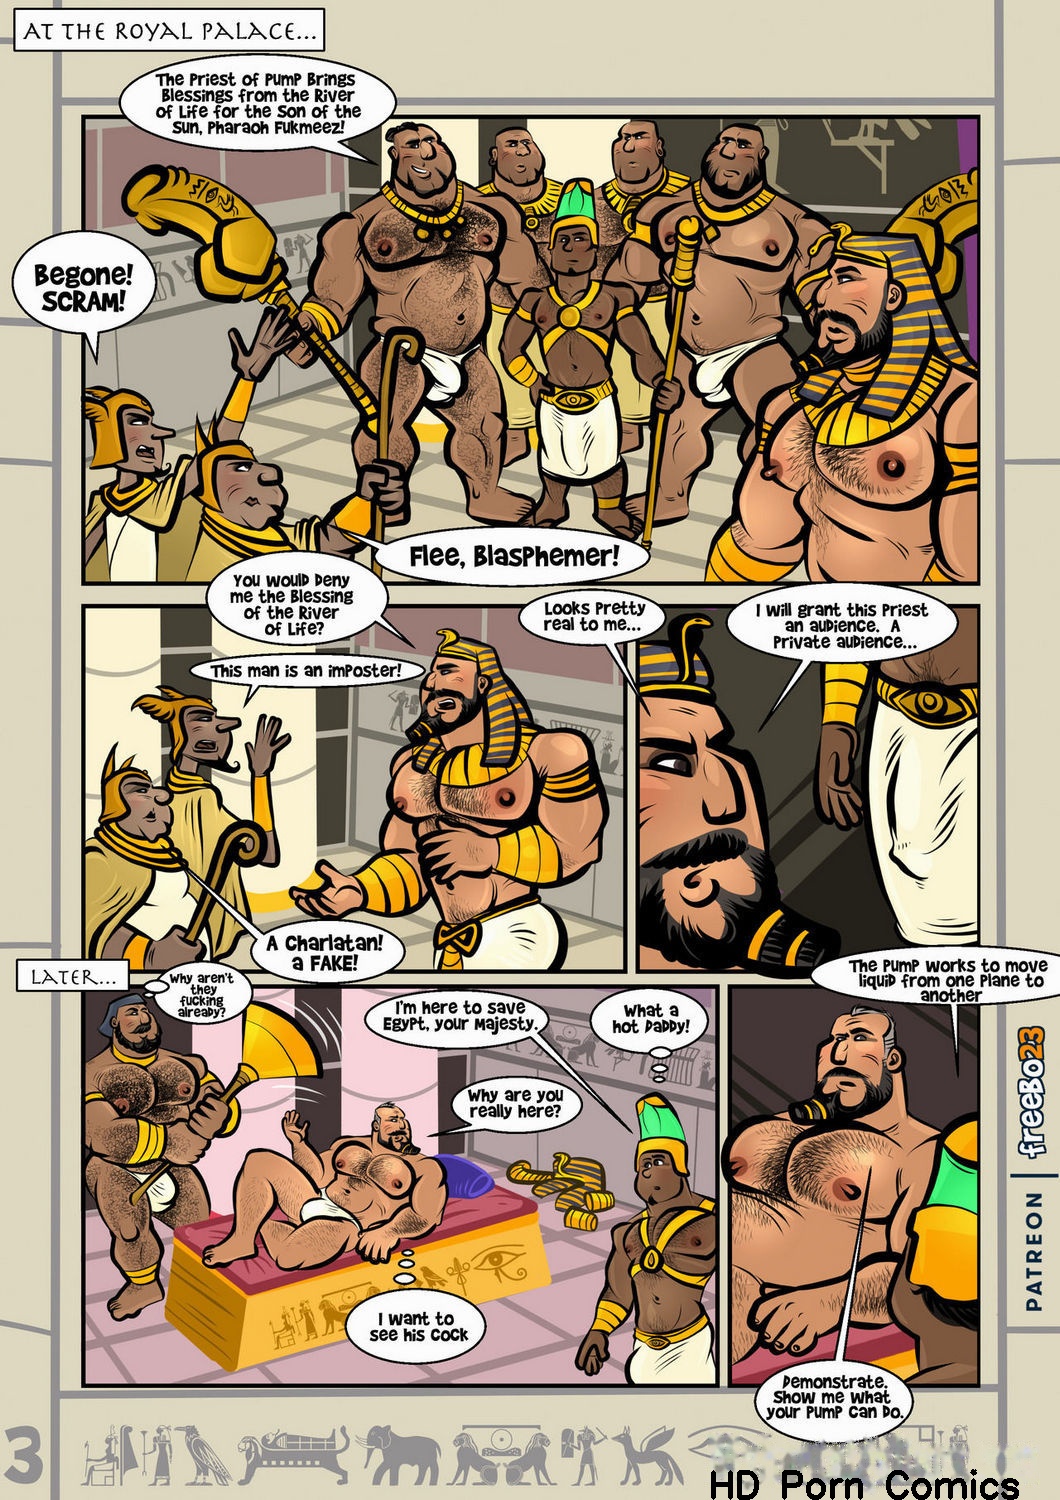 Egyptian gay porn comic